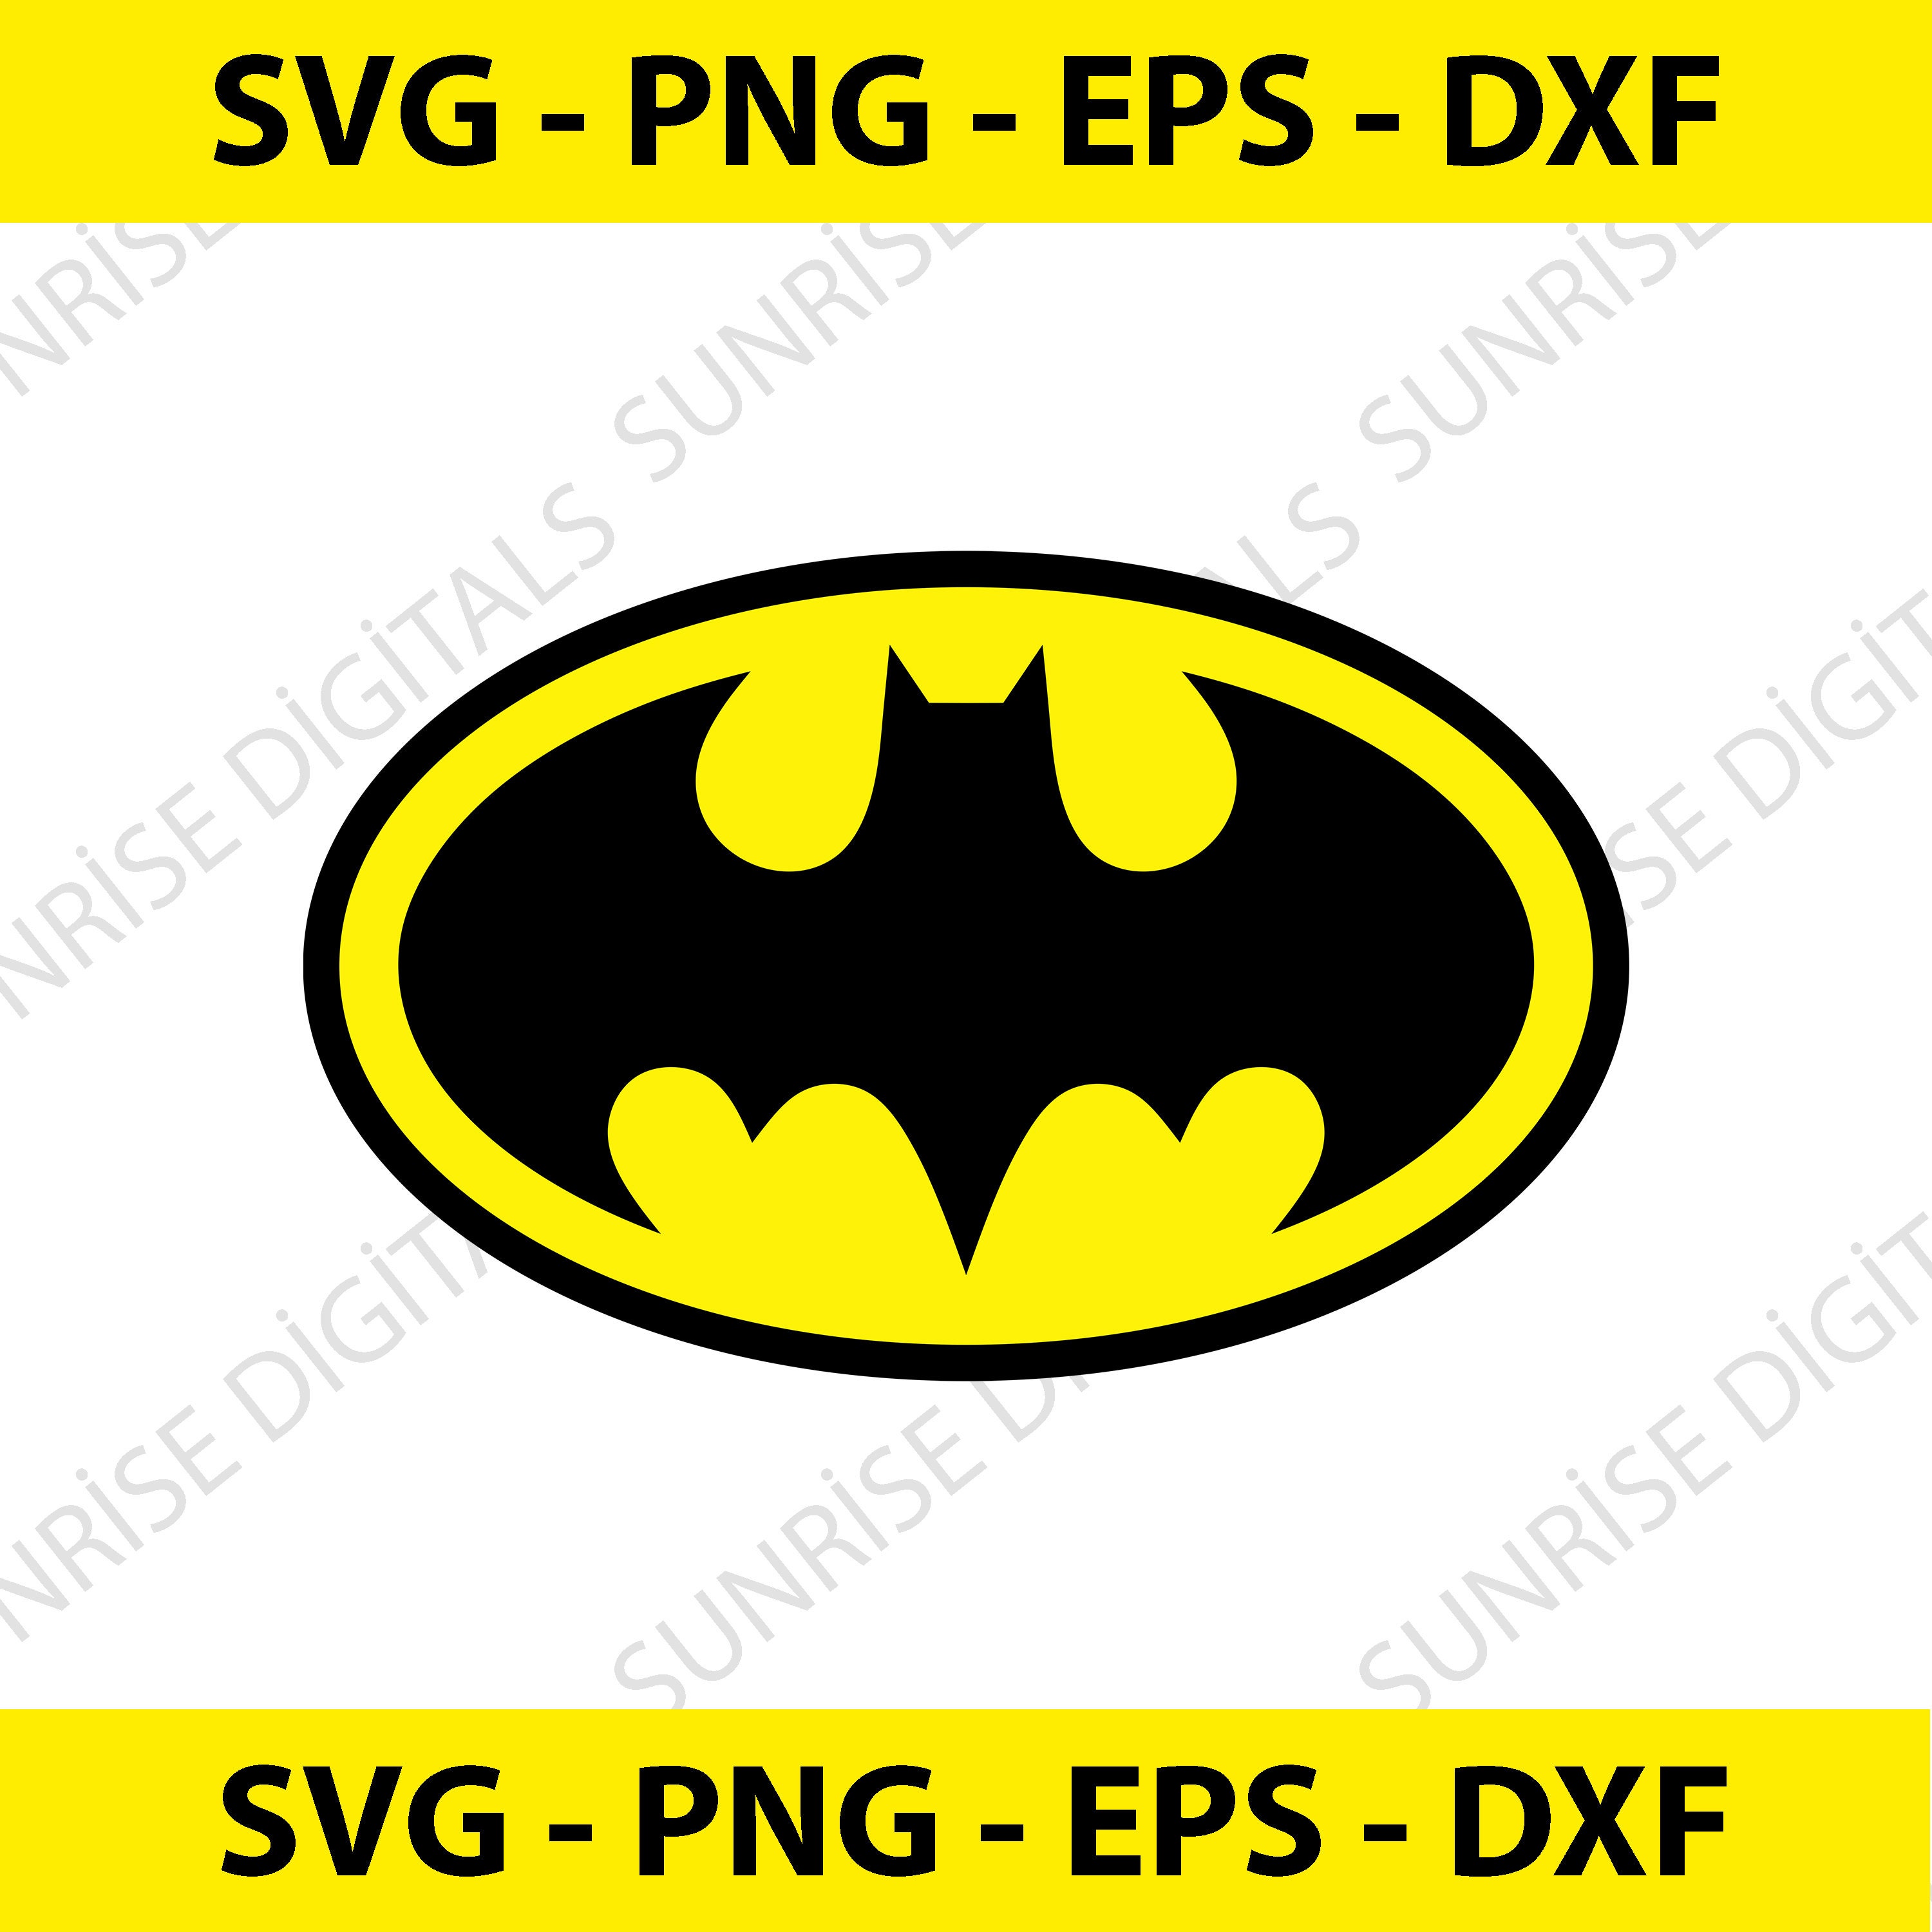 Batman - Shiny Silver Chrome Bat Logo - Foil Sticker / Decal